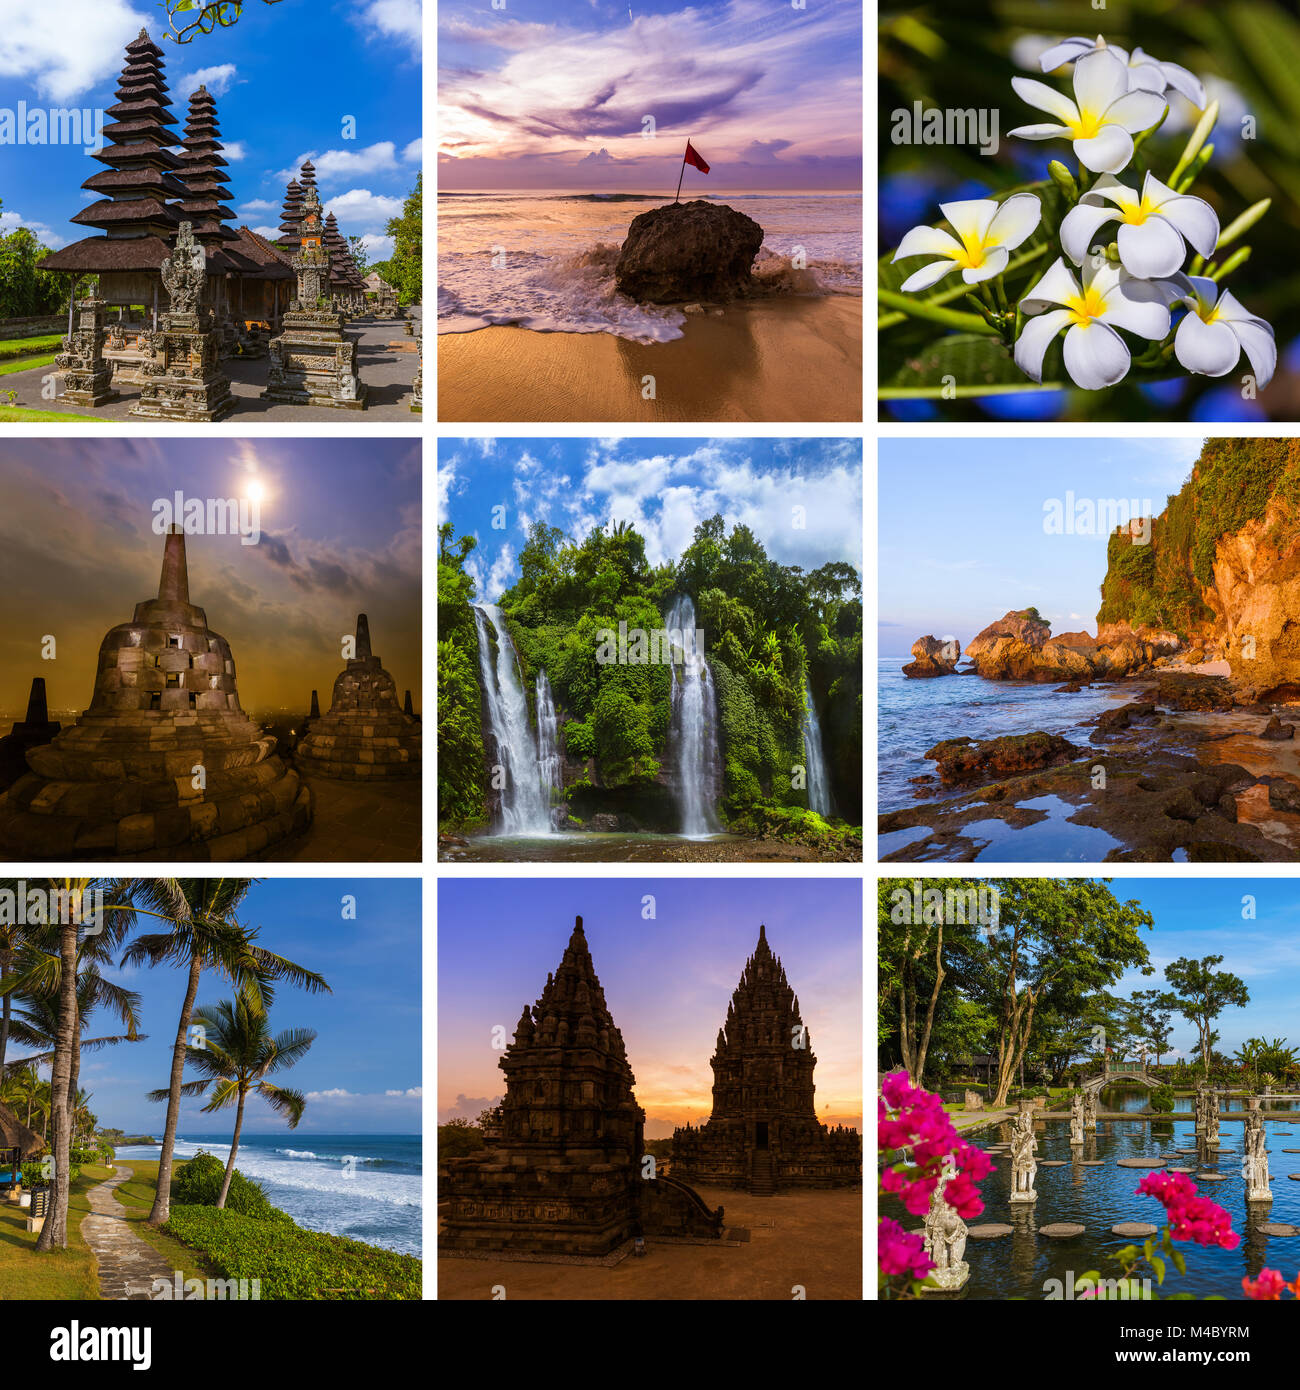 Collage d'images de voyage à Bali Indonésie (mes photos Photo Stock - Alamy